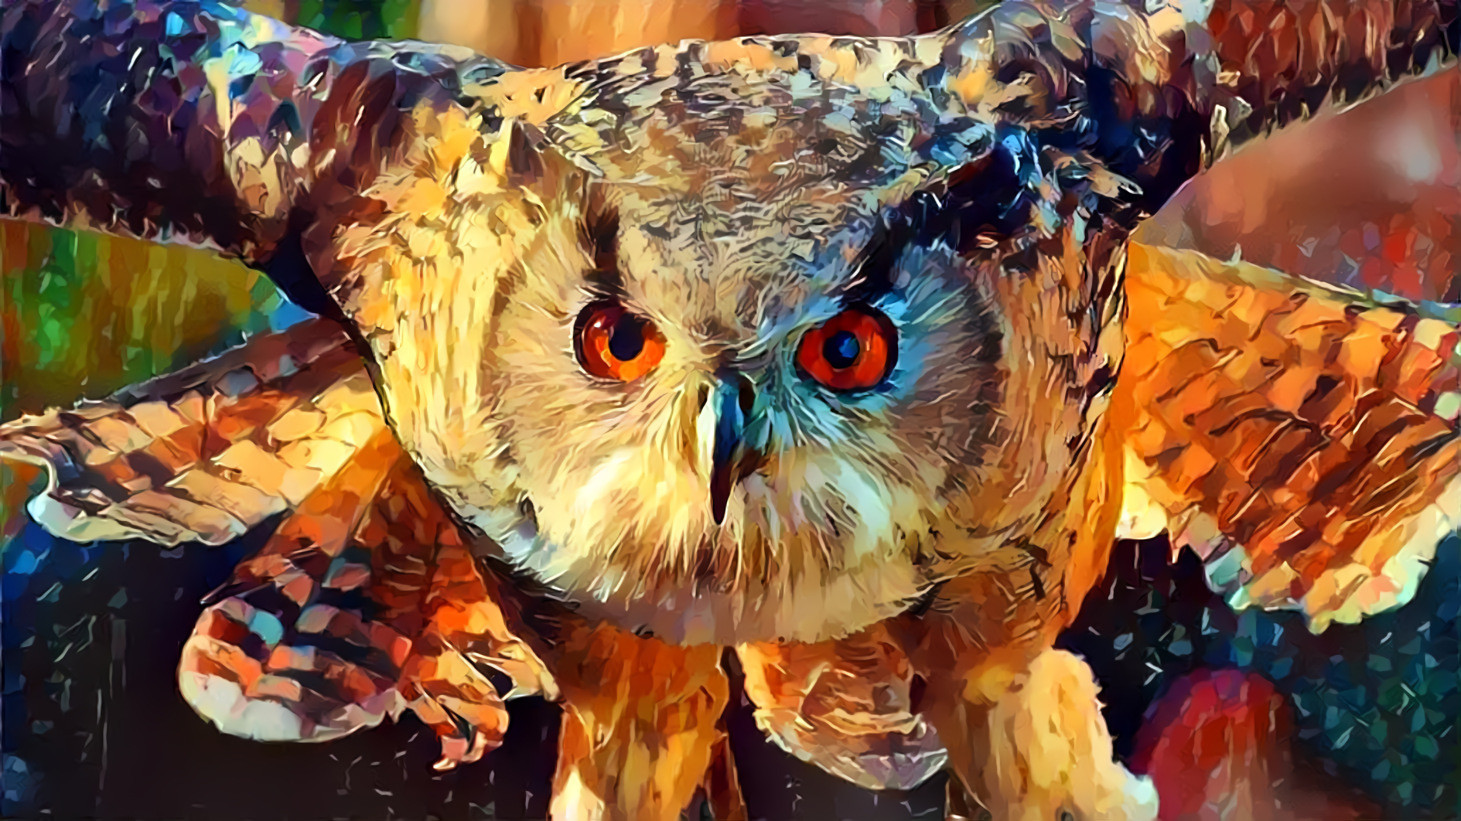 Owl in Flight [1.2MP]